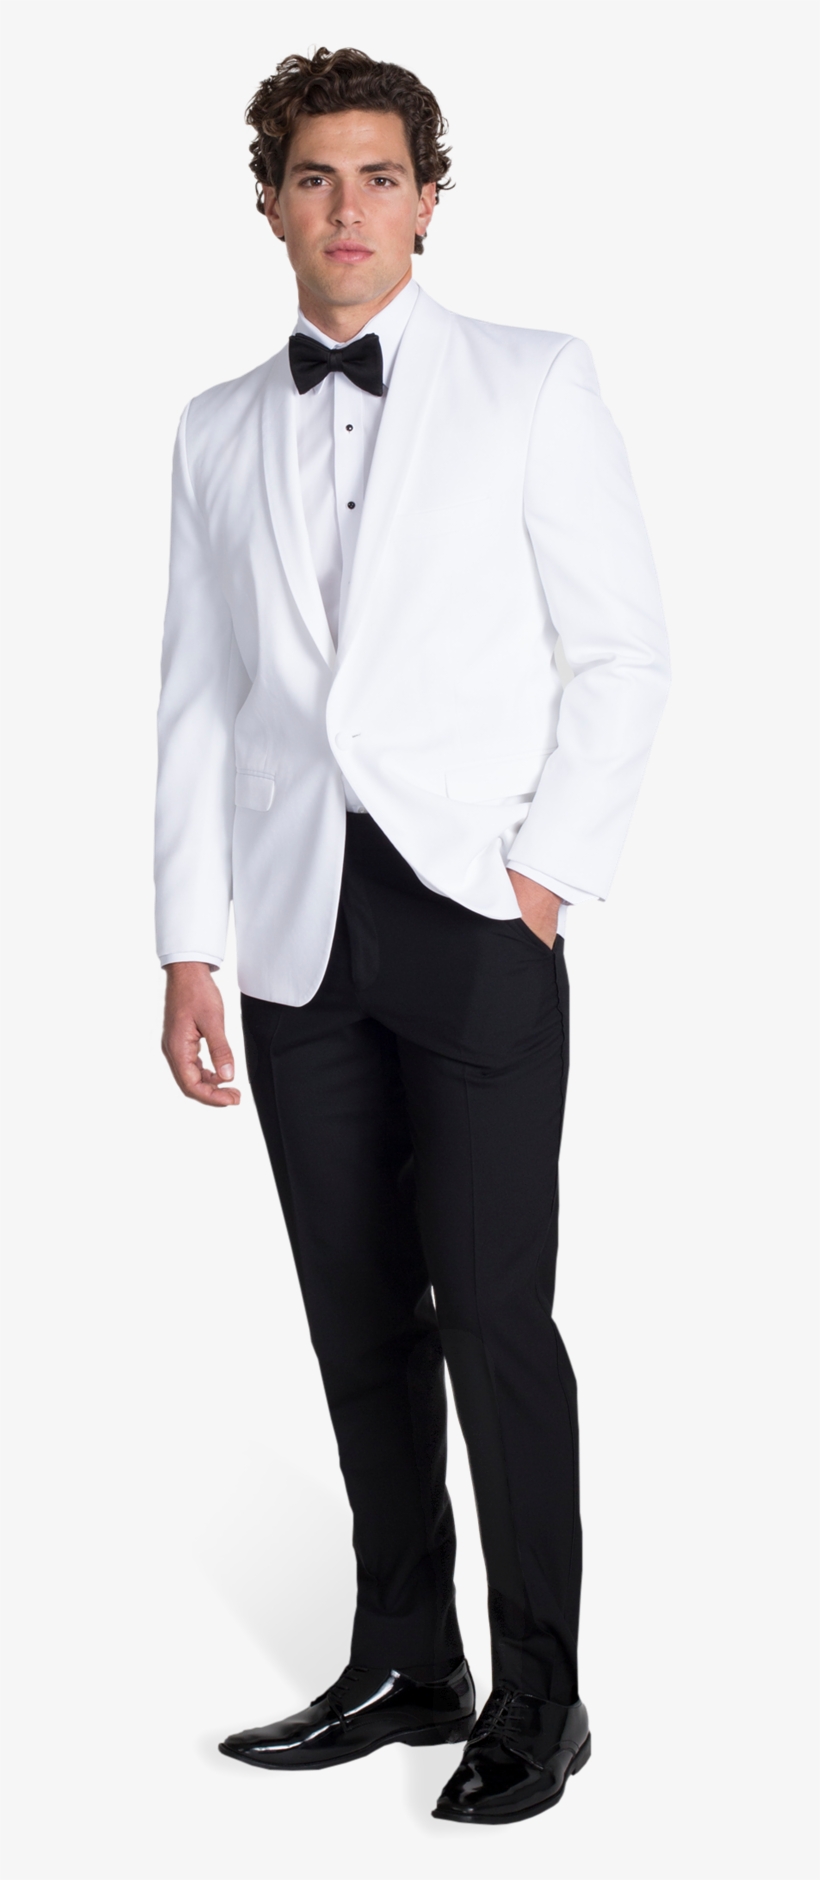 White Tuxedo Dinner Jacket - Tuxedo, transparent png #746679